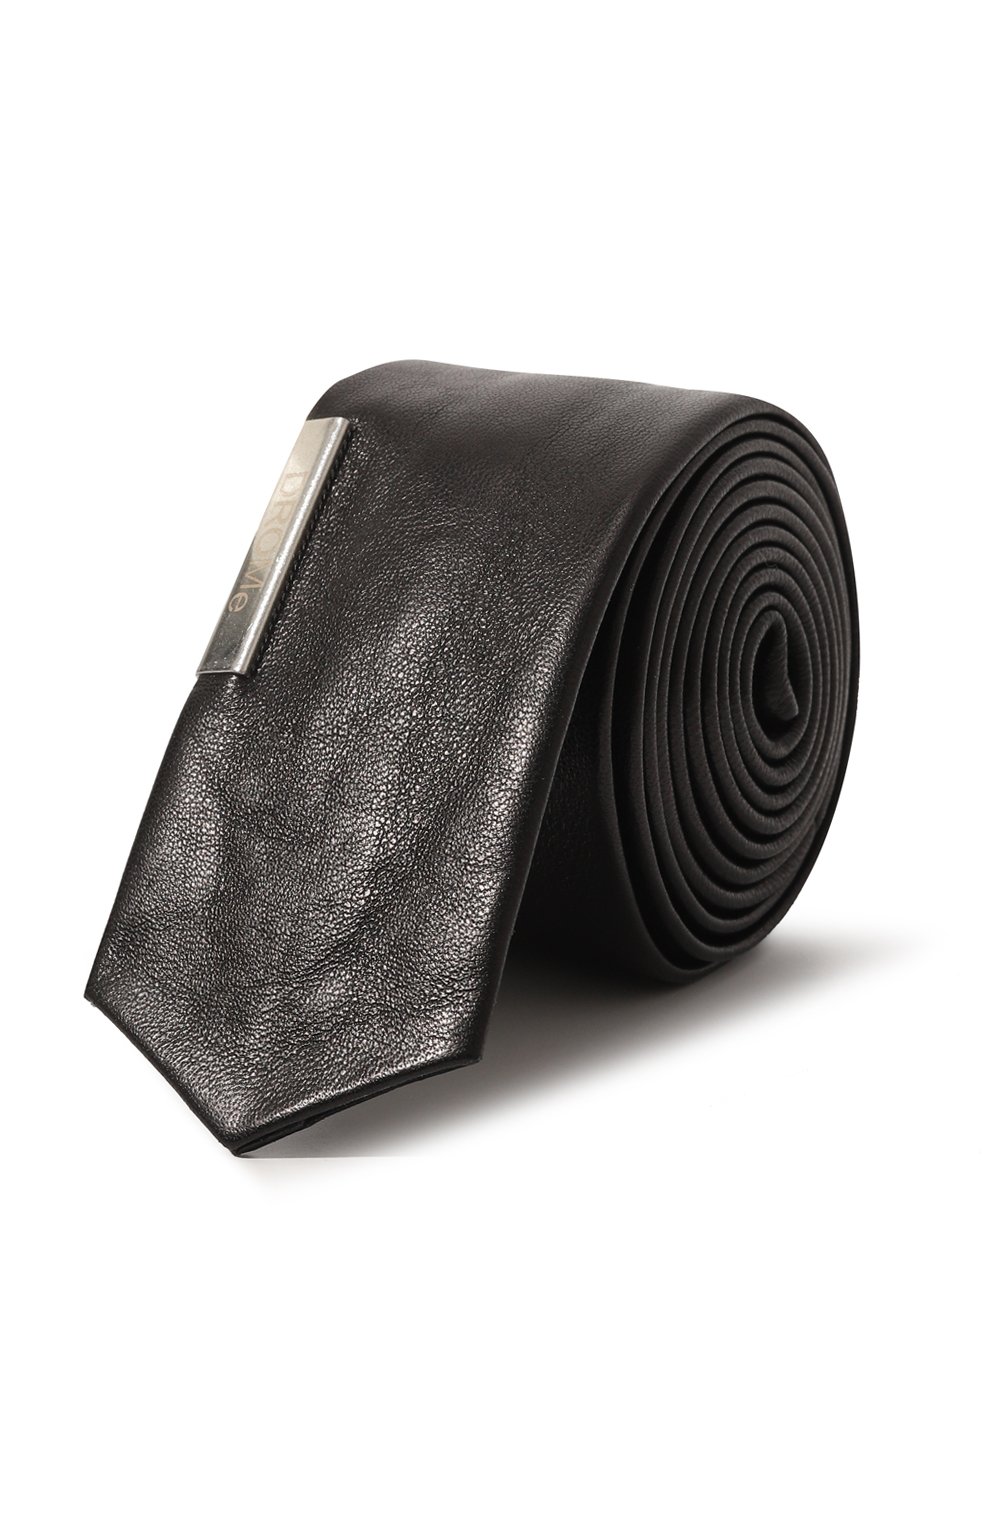 Галстуки DROMe, Кожаный галстук DROMe, Италия, Чёрный, Кожа натуральная: 100%;, 13025215  - купить